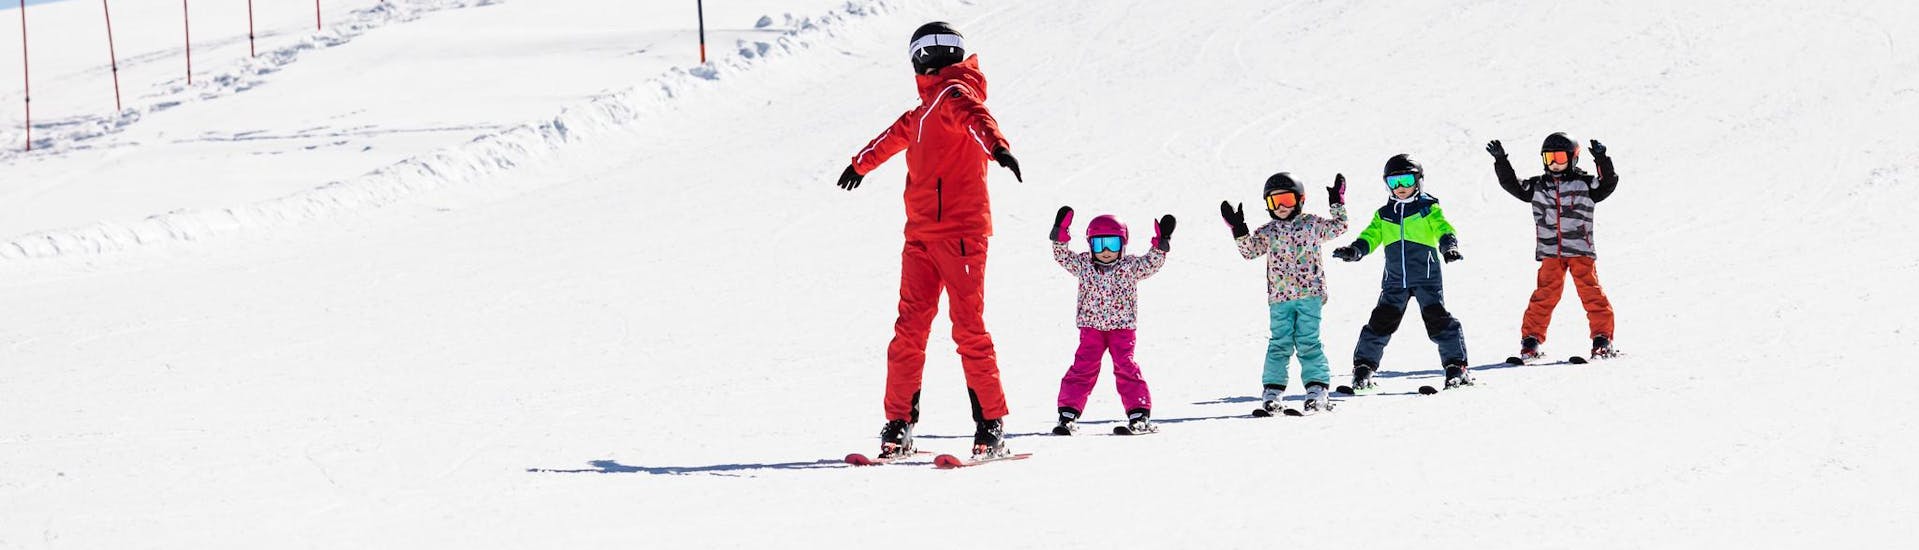 Moniteur de ski et enfants profitent d'une leçon de ski dans une école de ski près de Geneva.